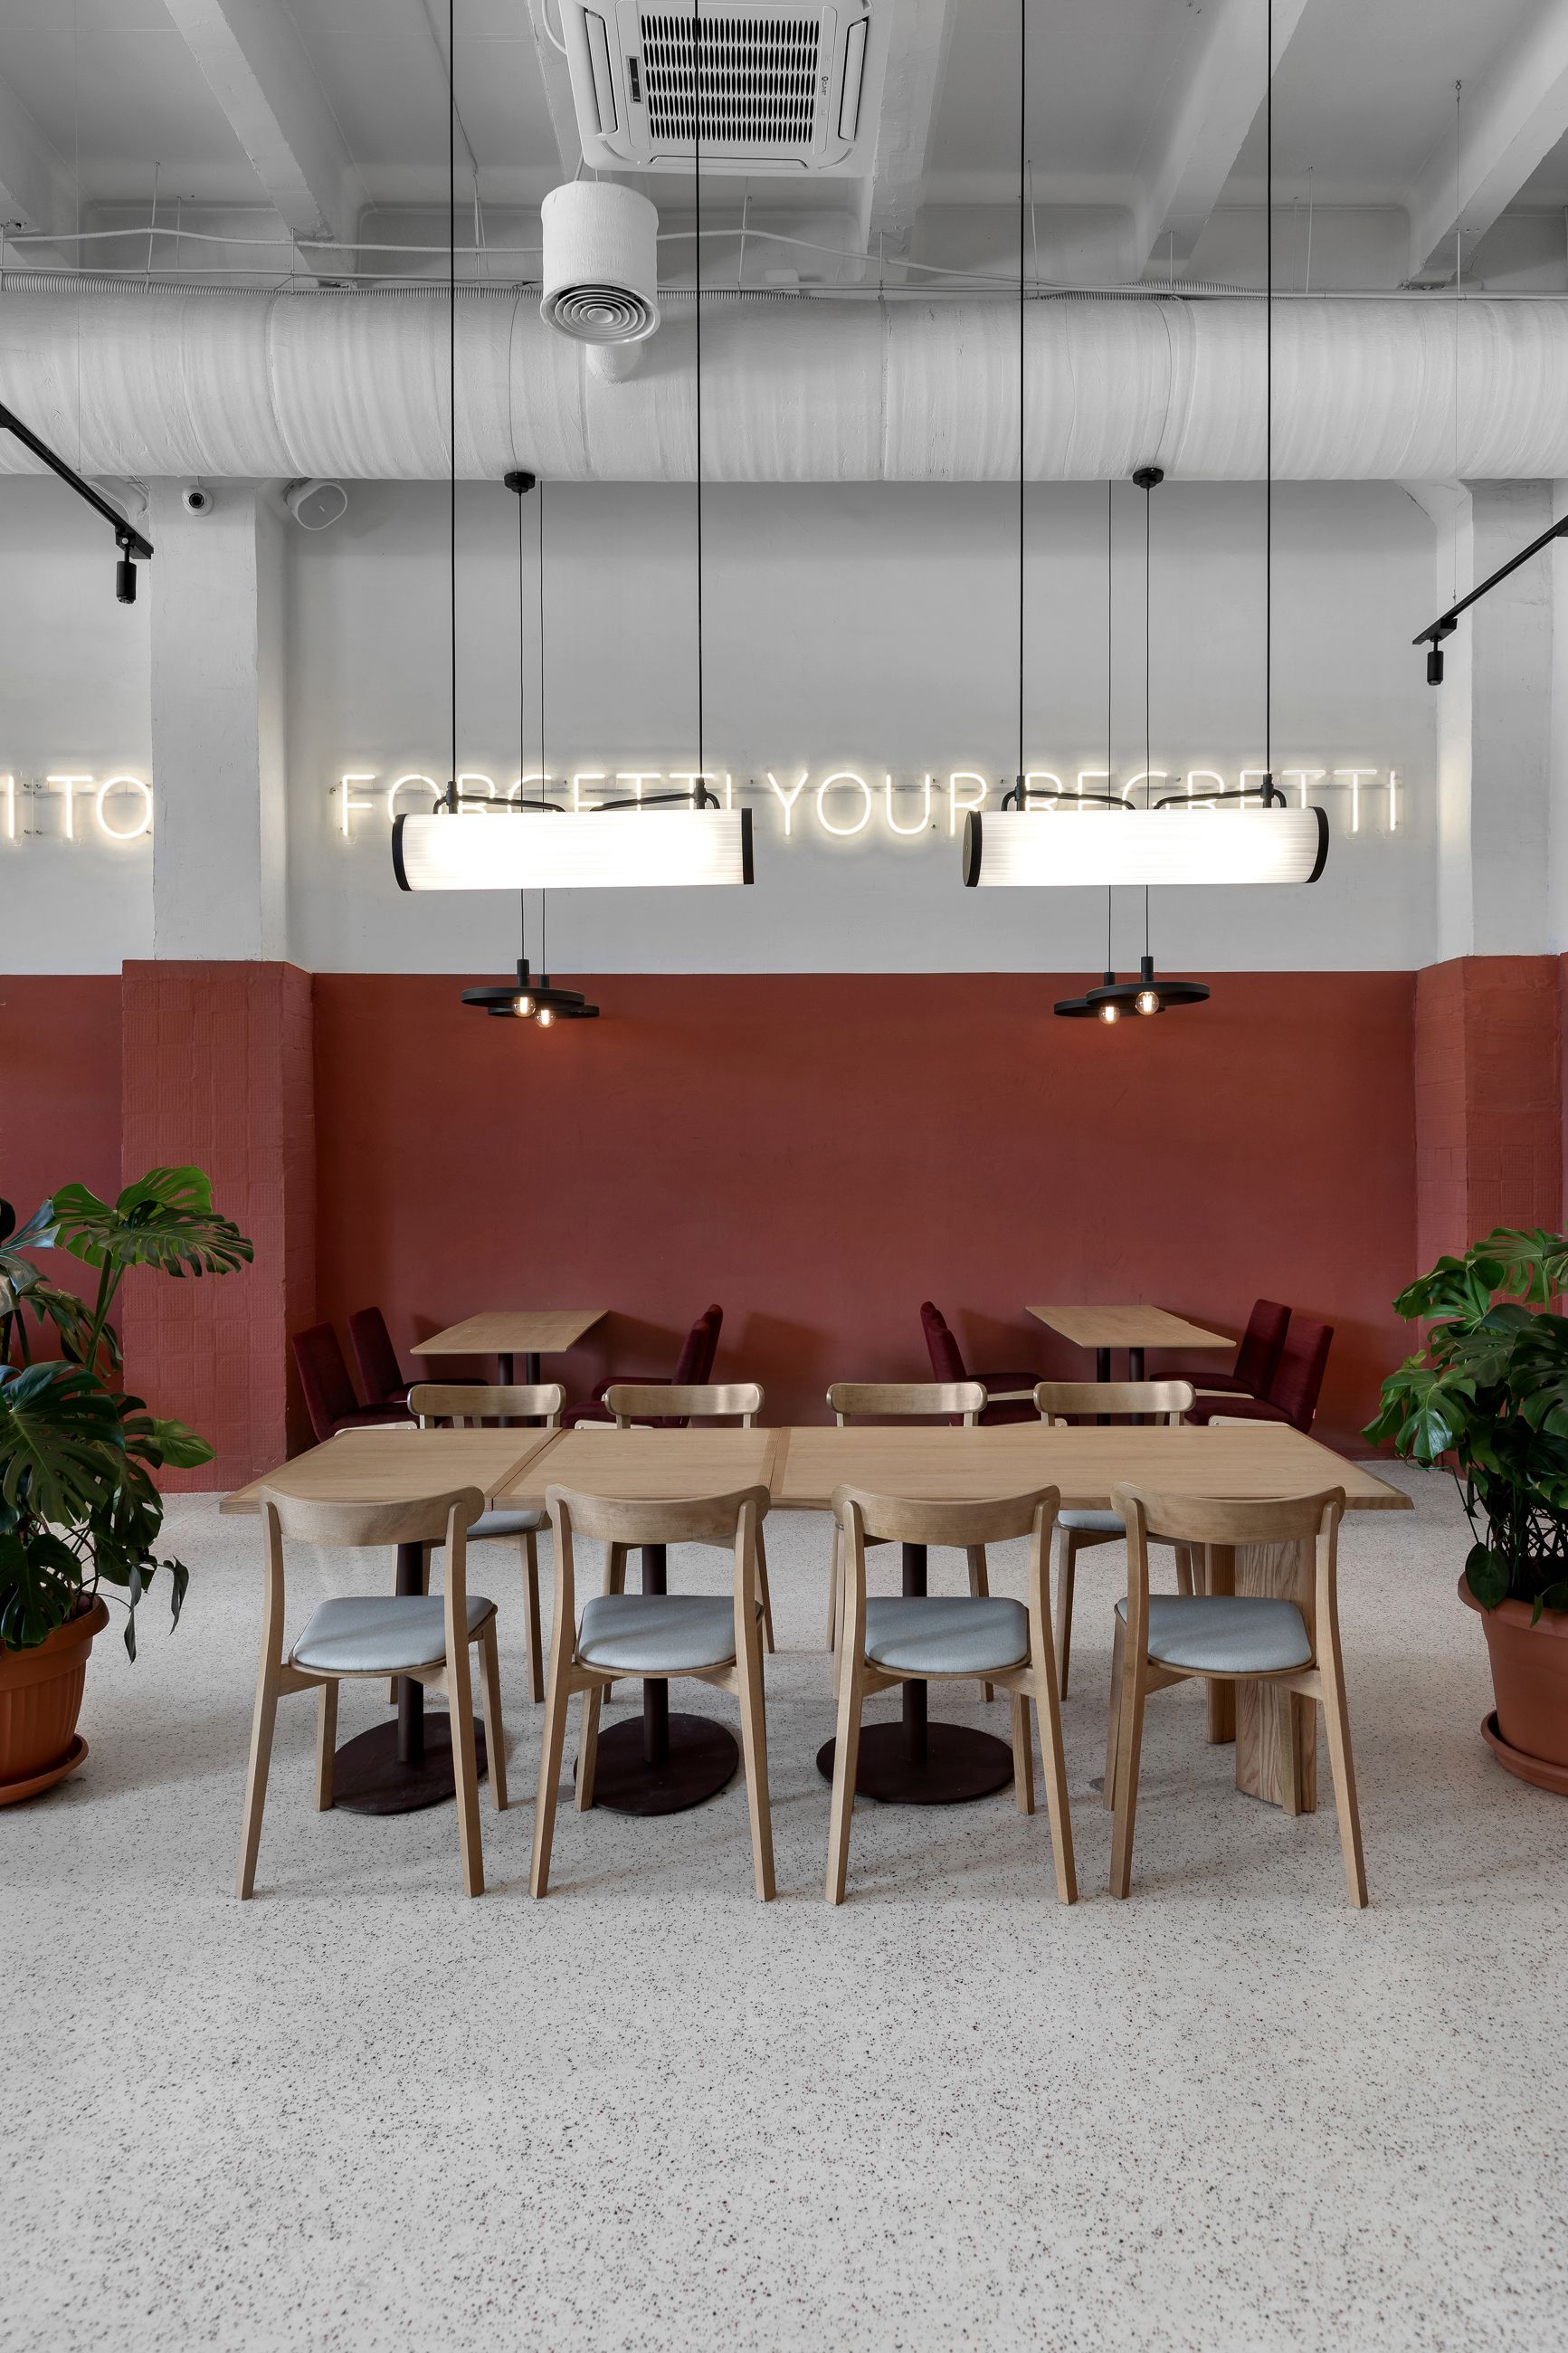 图片[4]|基辅玫瑰玛丽咖啡馆|ART-Arrakis | 建筑室内设计的创新与灵感